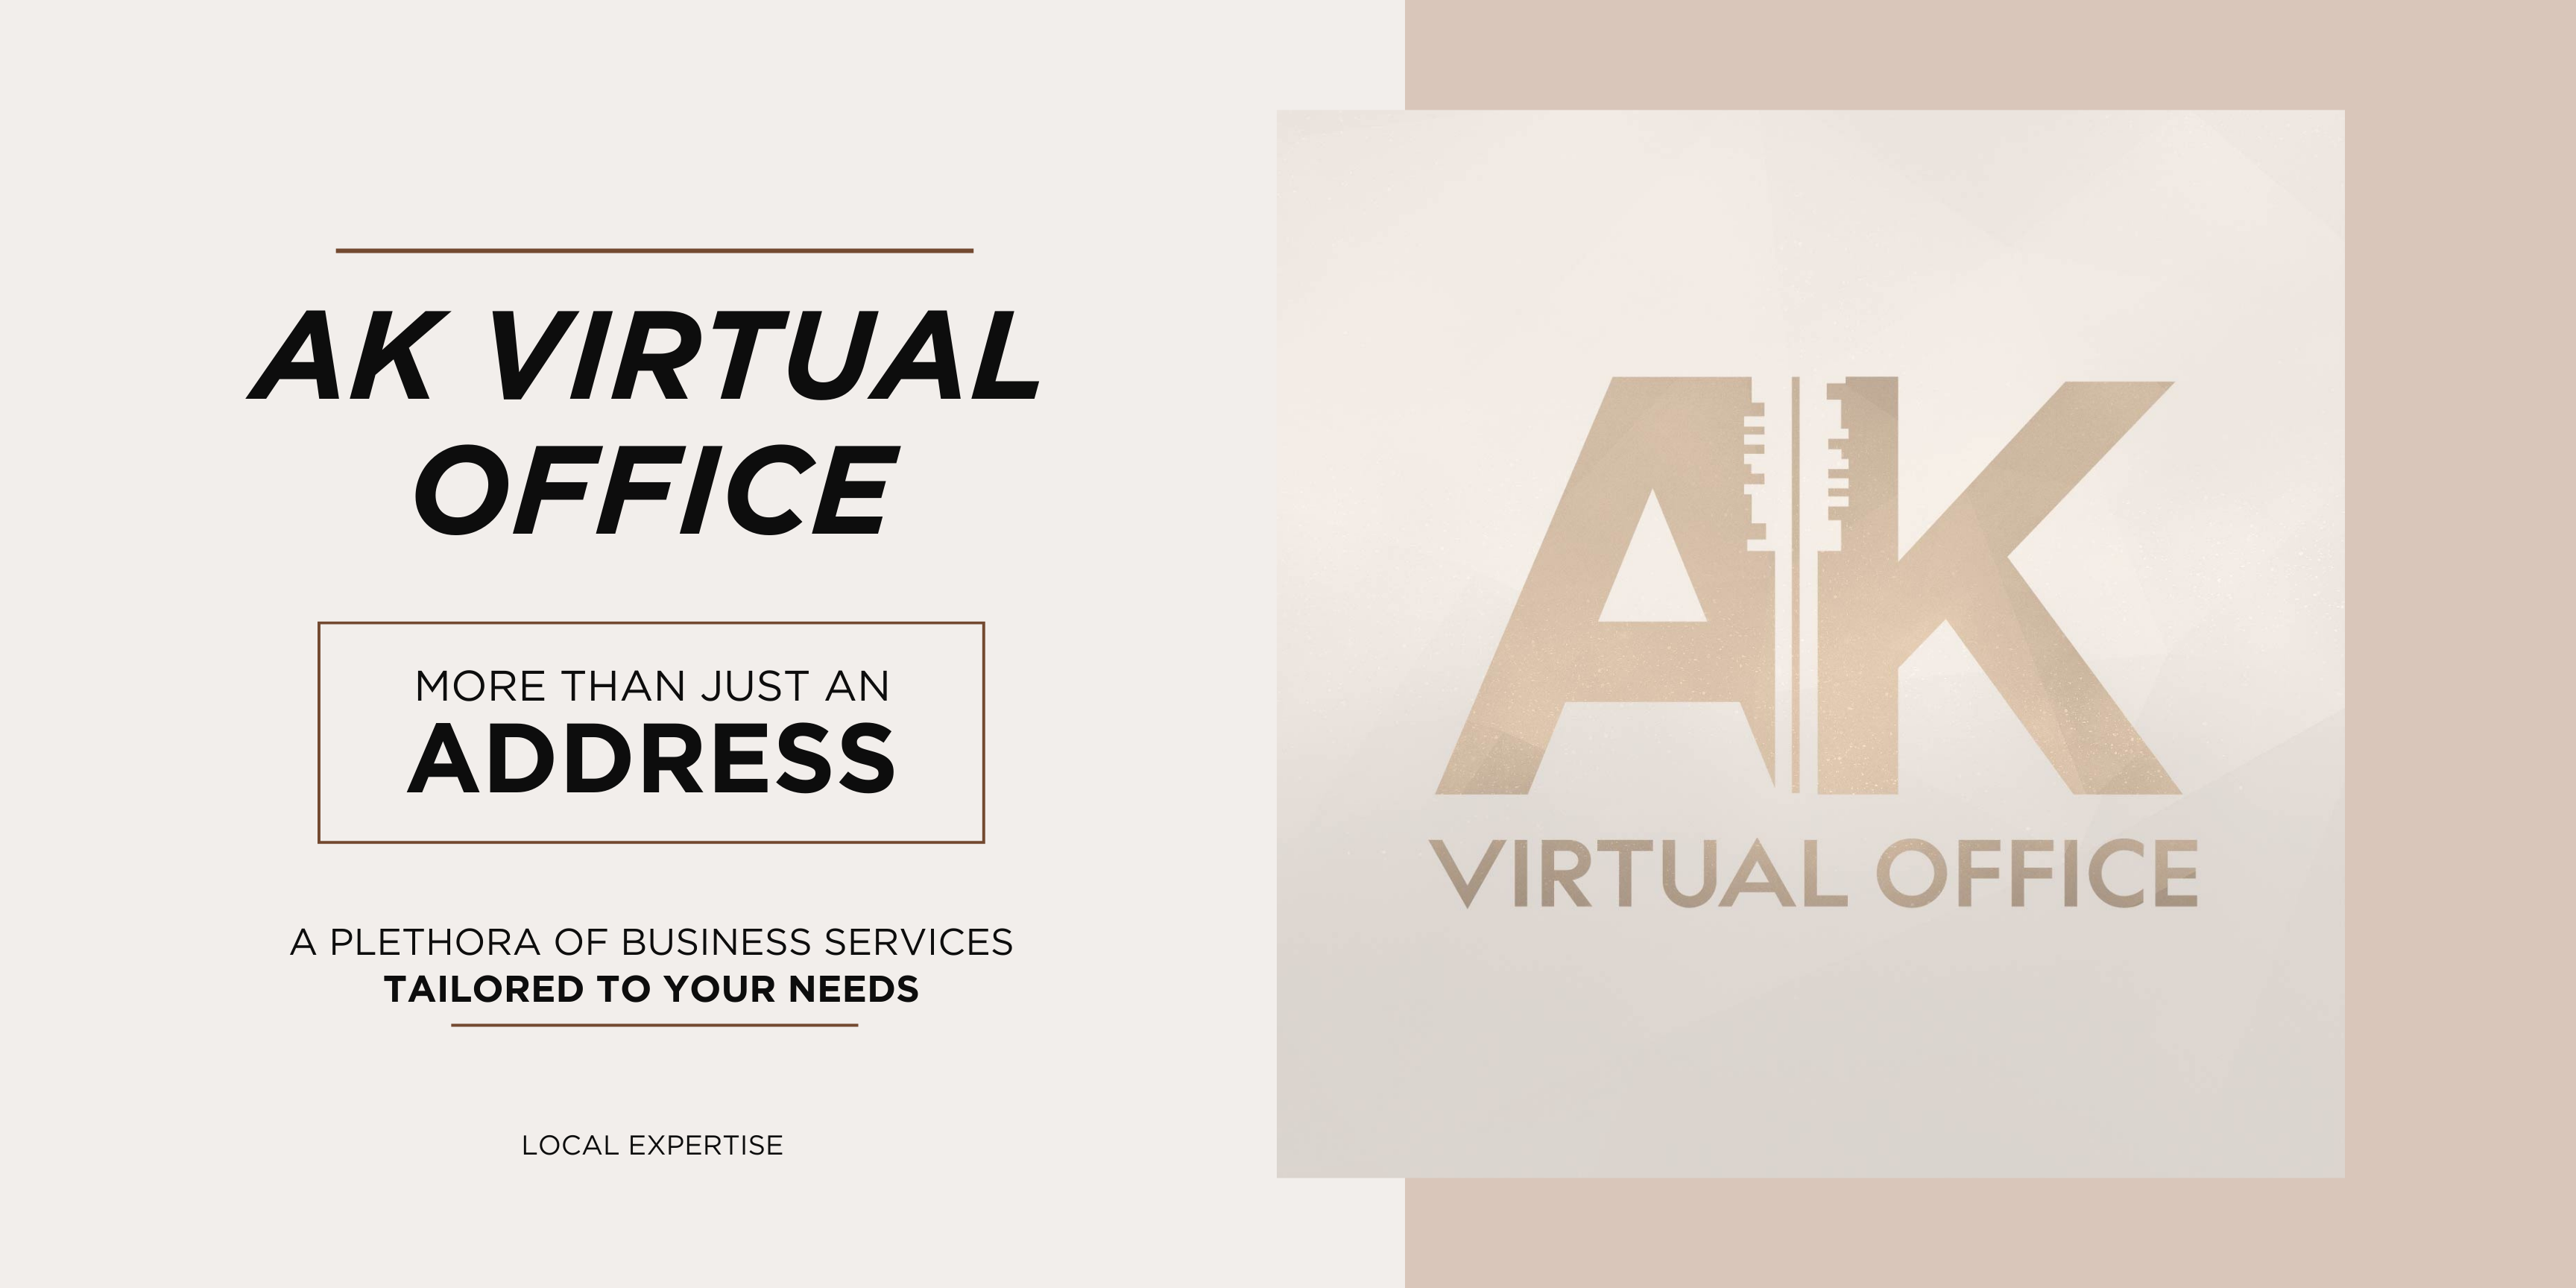 AK Virtual Office